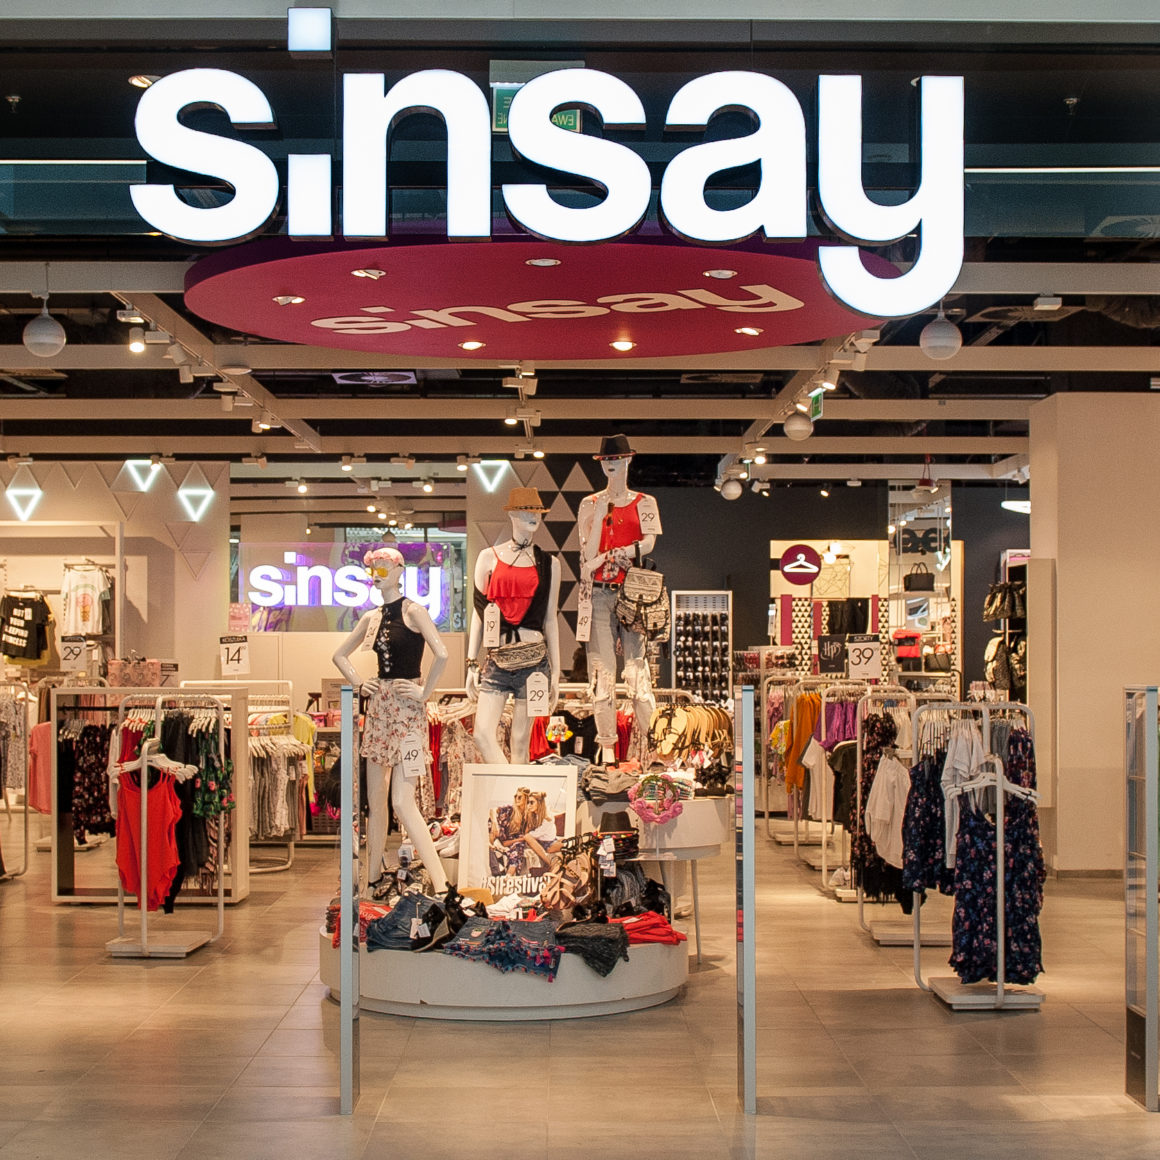 Sinsay Интернет Магазин Уфа Детской Одежды